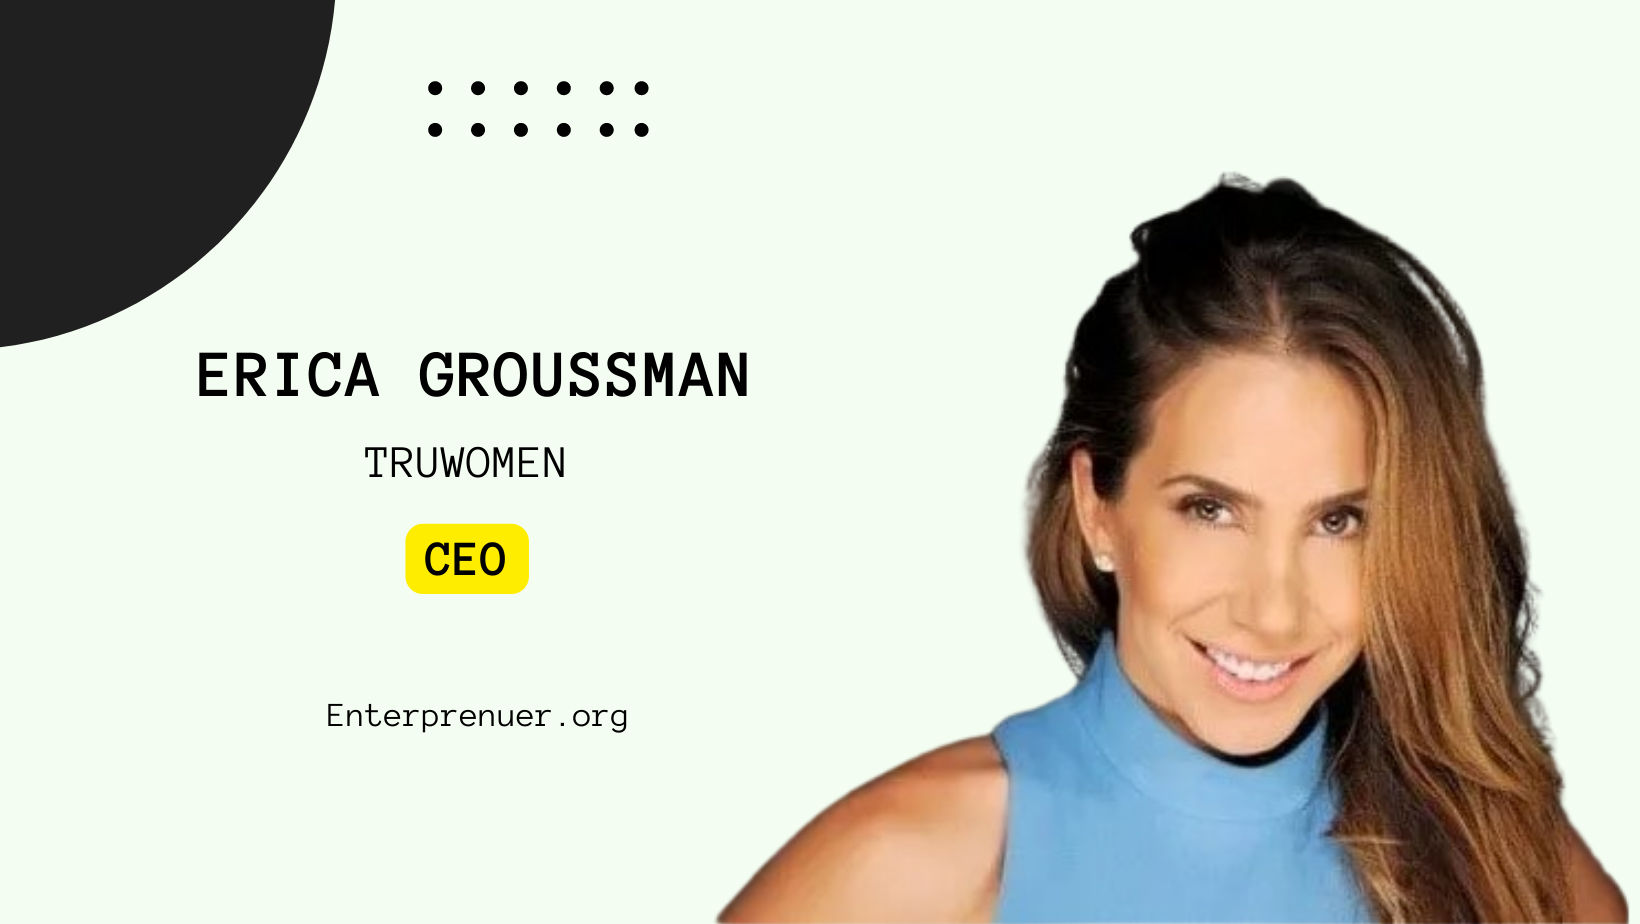 Meet Erica Groussman, CEO of TRUWOMEN